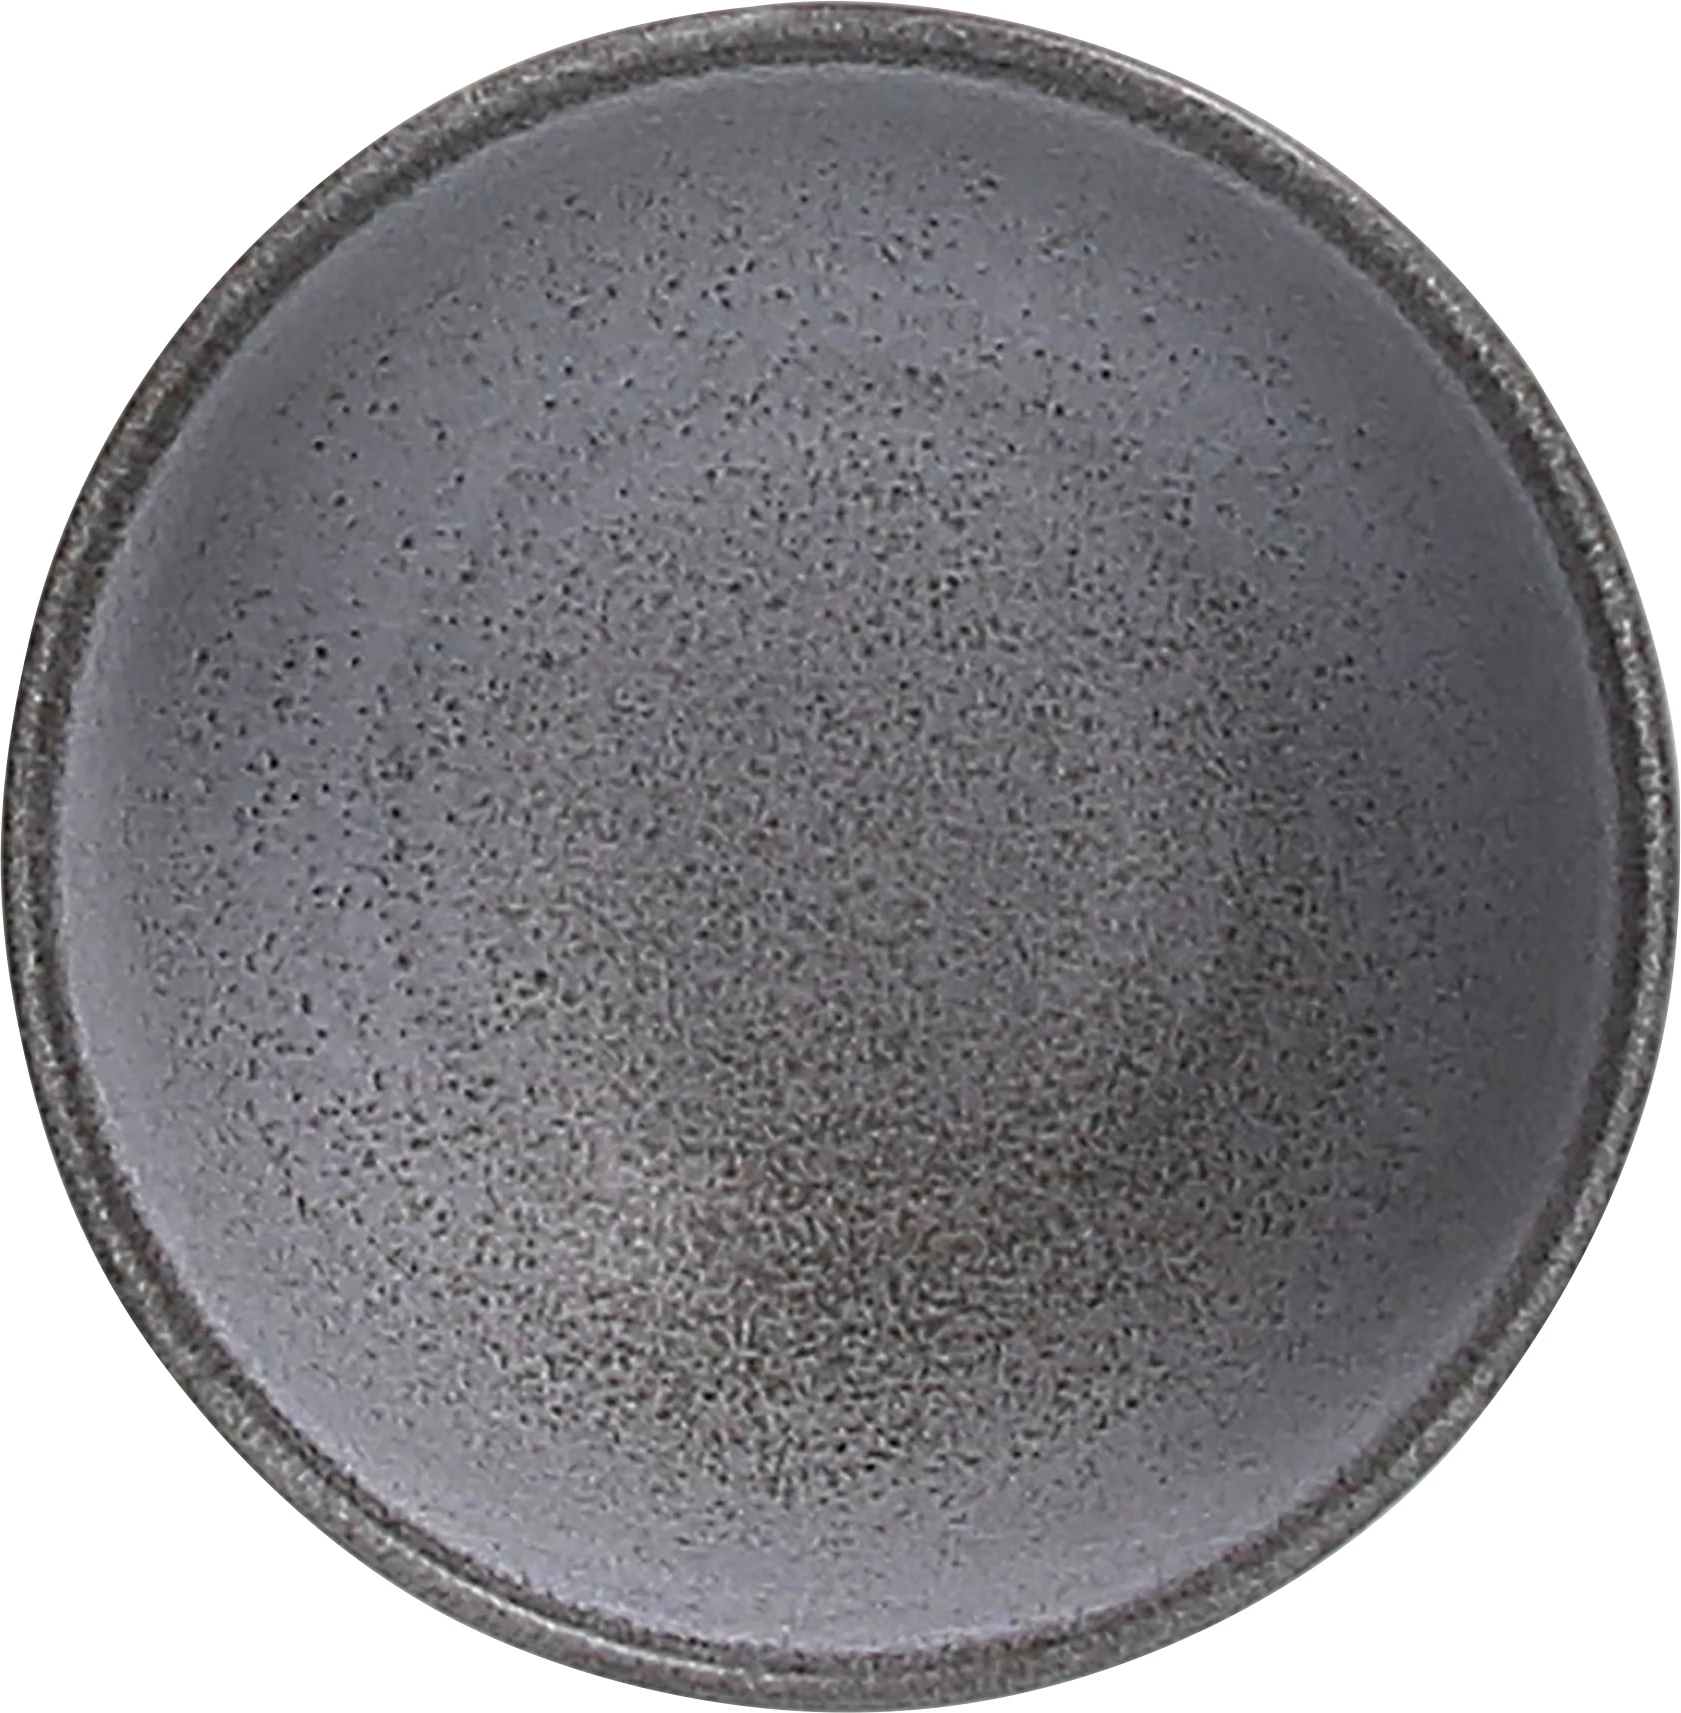 Tognana Terracotta skål, grå, 17 cl, ø9 cm